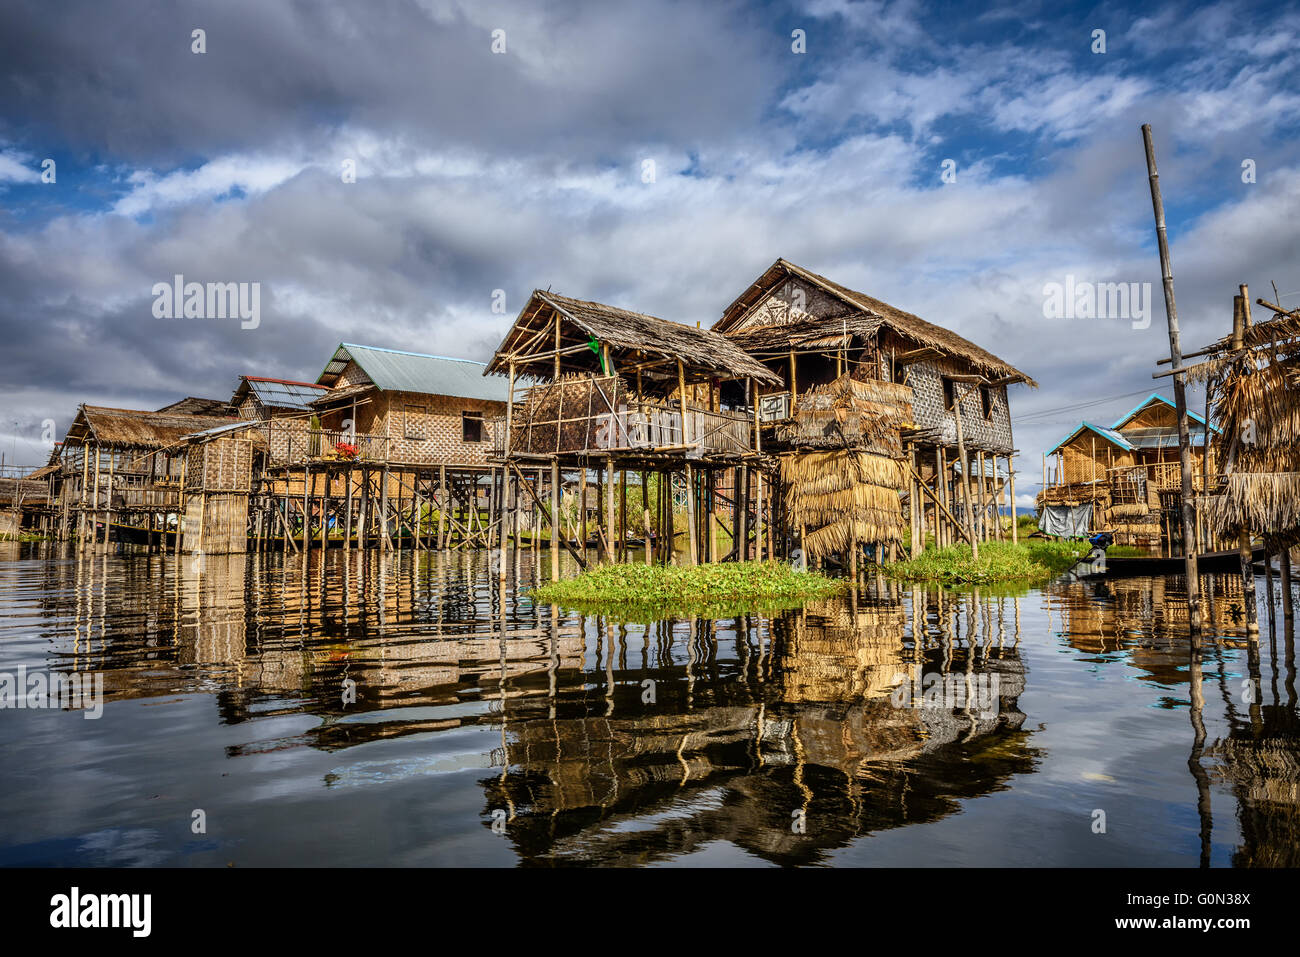 Les maisons en bois sur pilotis habité par la tribu de Inthar, lac Inle, Myanmar Banque D'Images